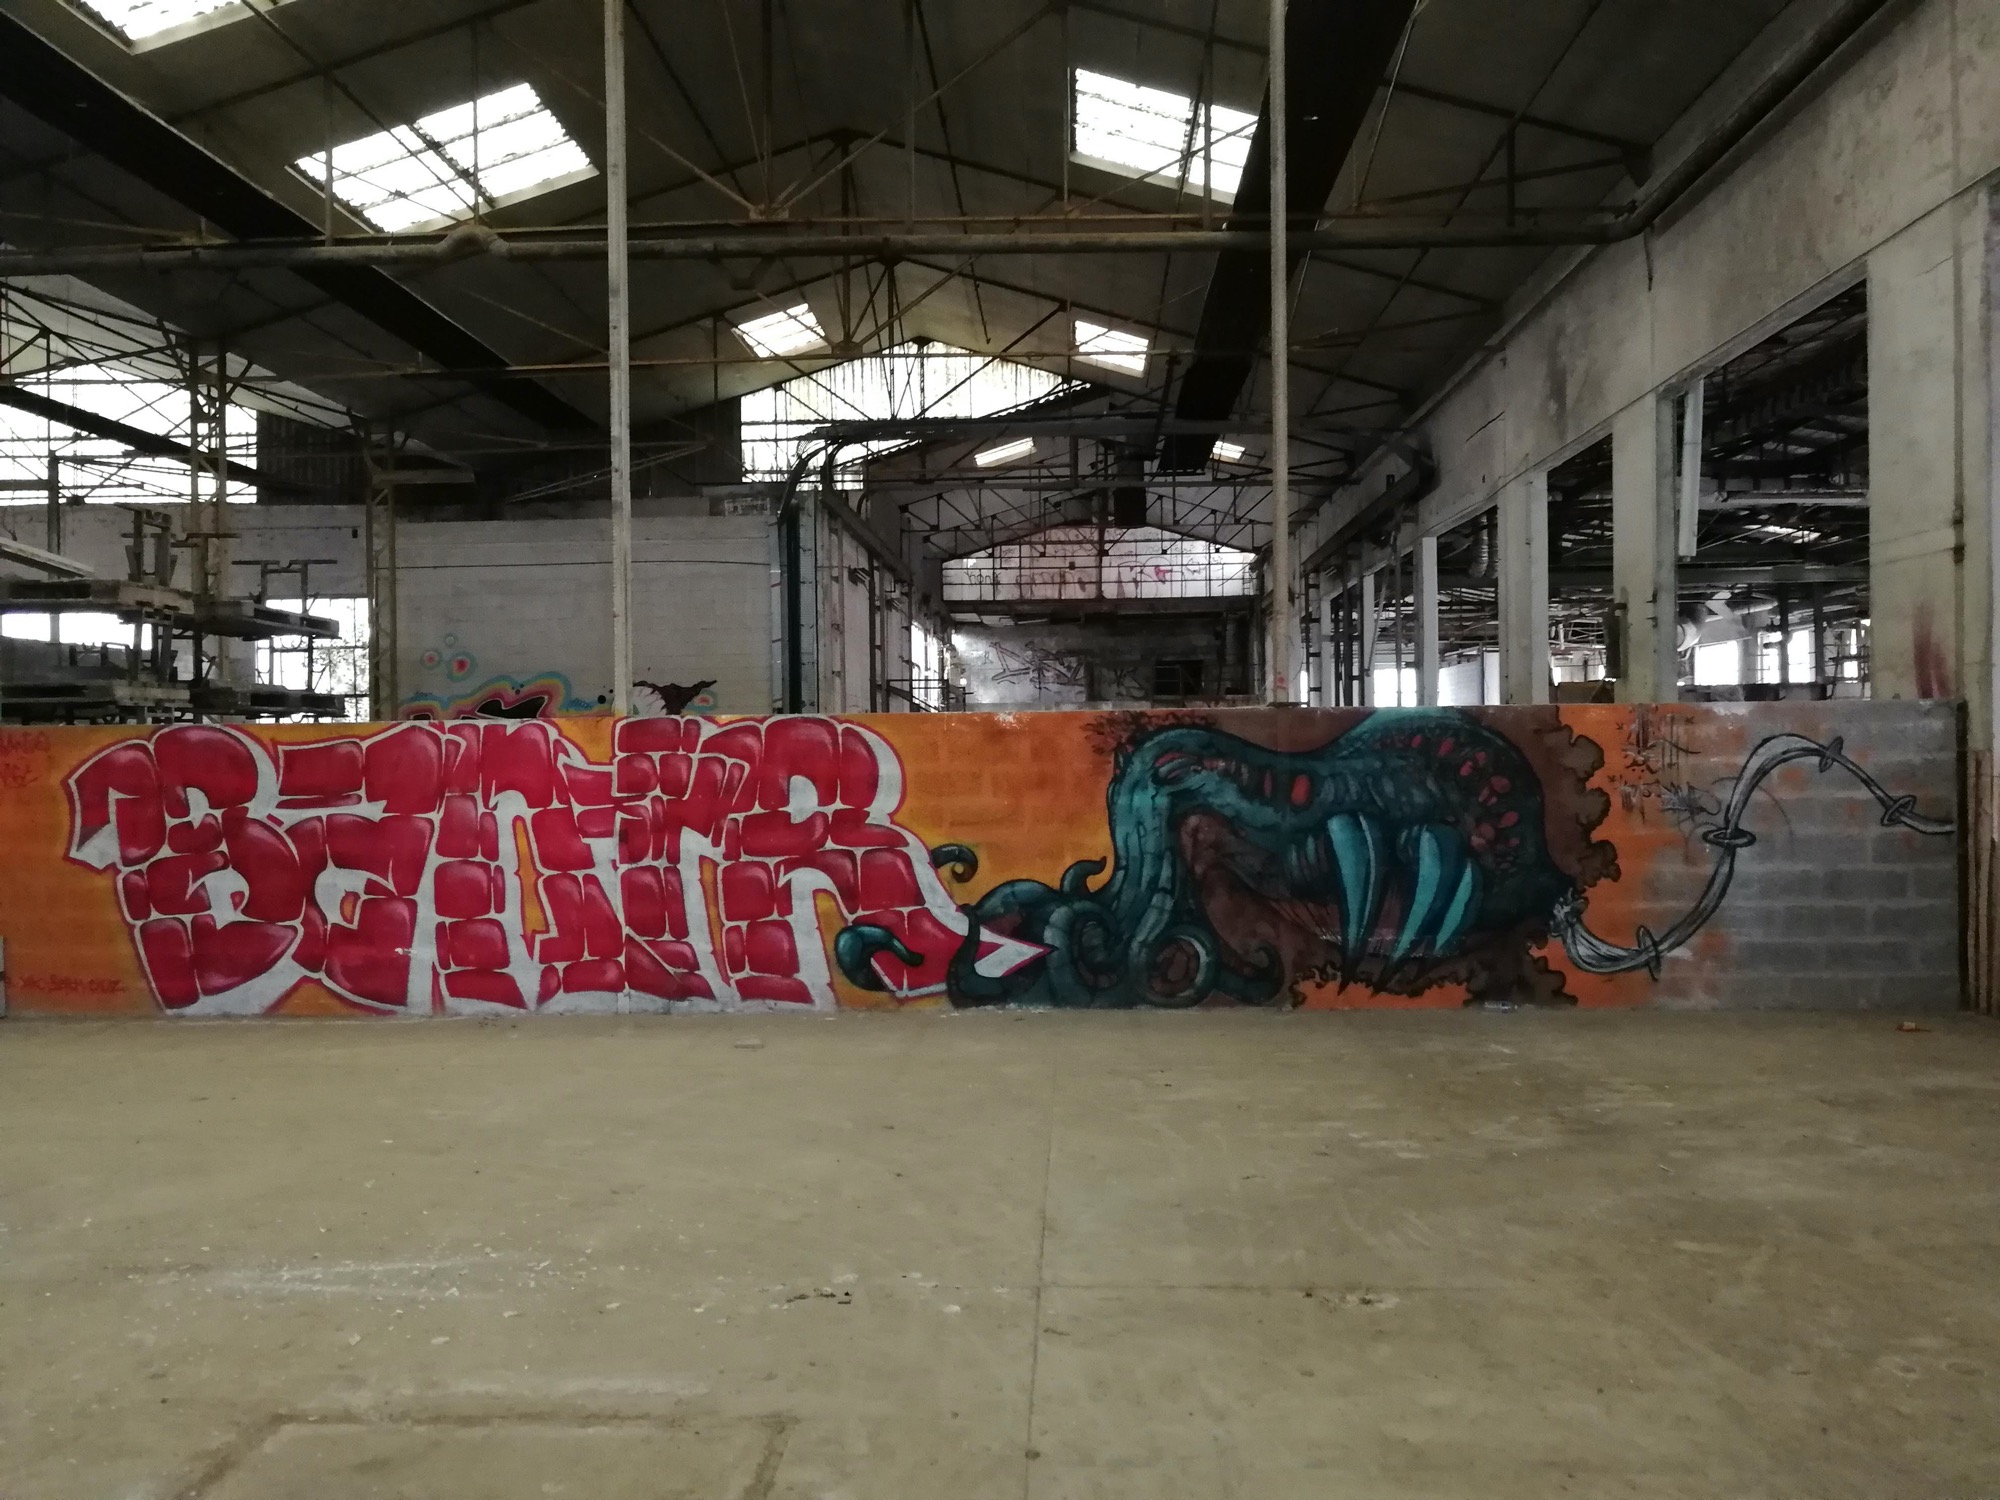 Graffiti 1387  capturé par Rabot à Issé France